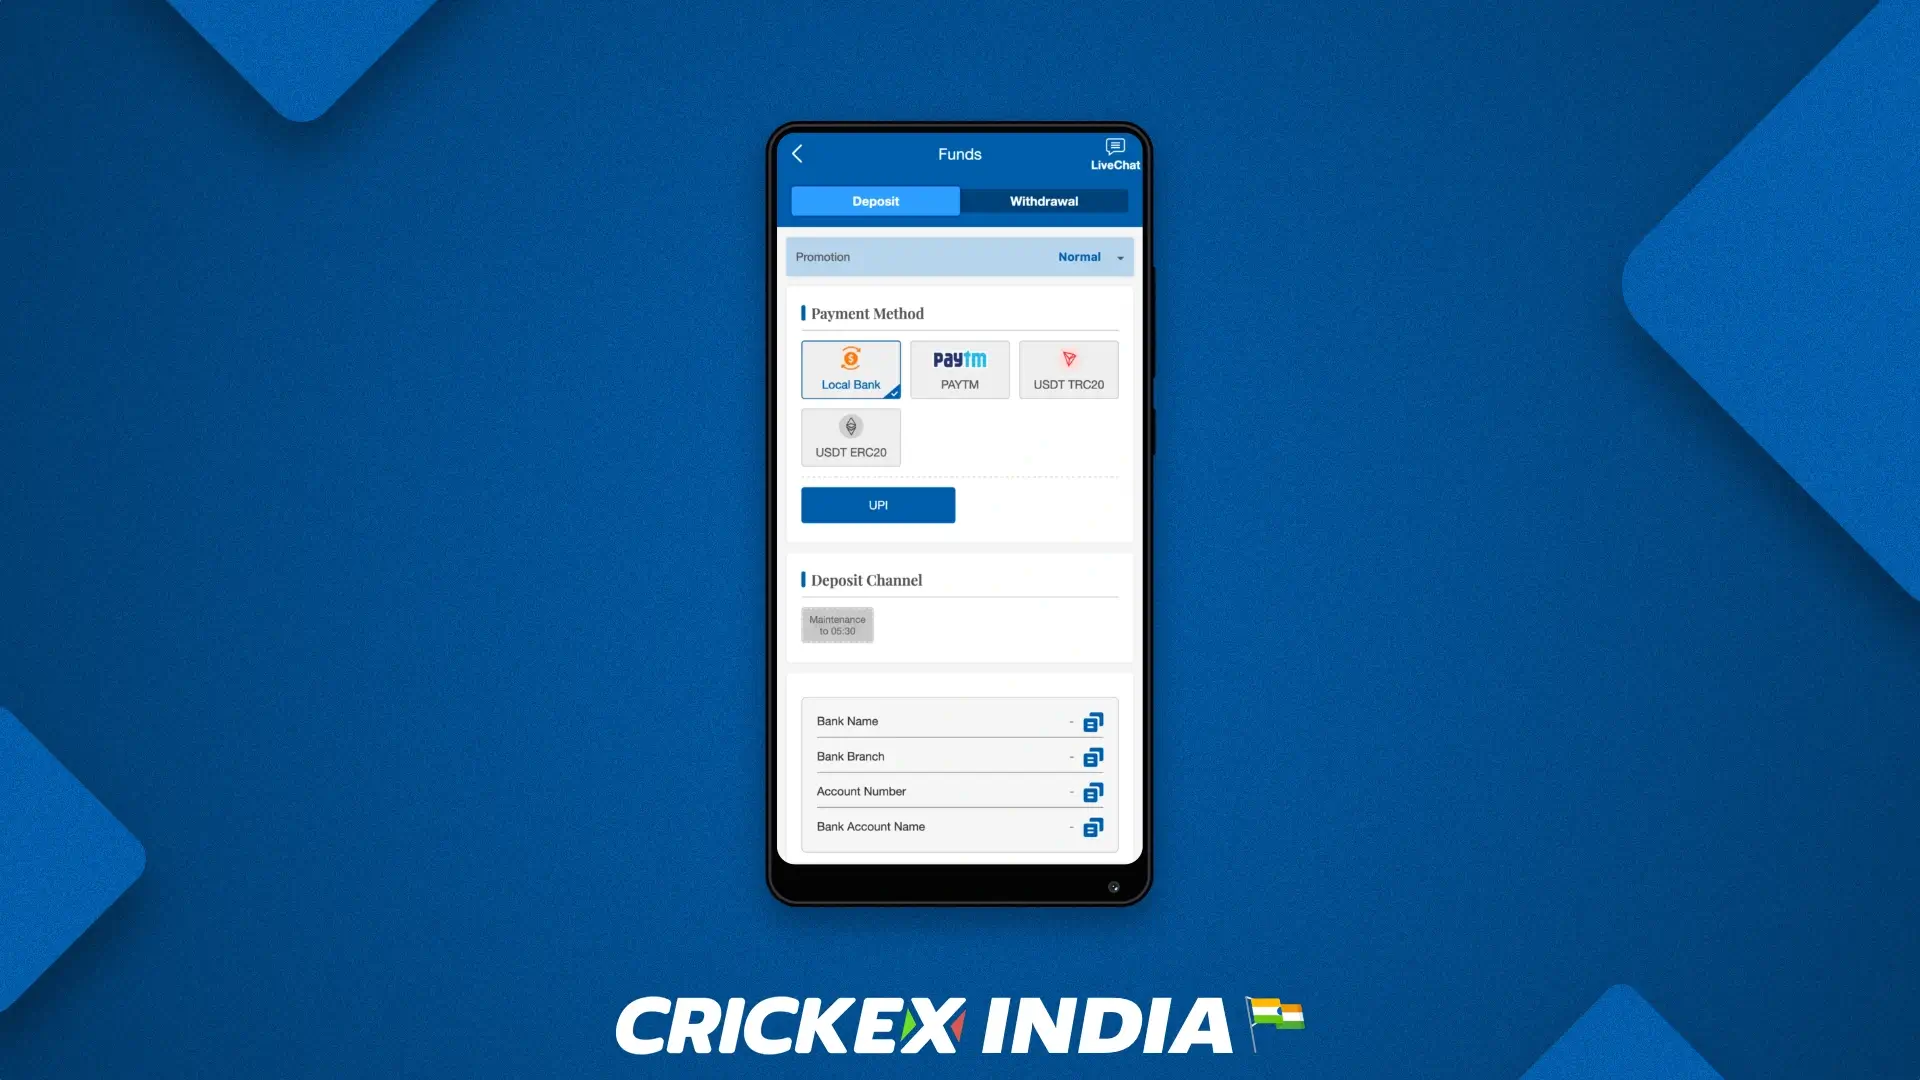 भारतीय खिलाड़ियों के लिए Crickex मोबाइल ऐप में उपलब्ध भुगतान विधियां